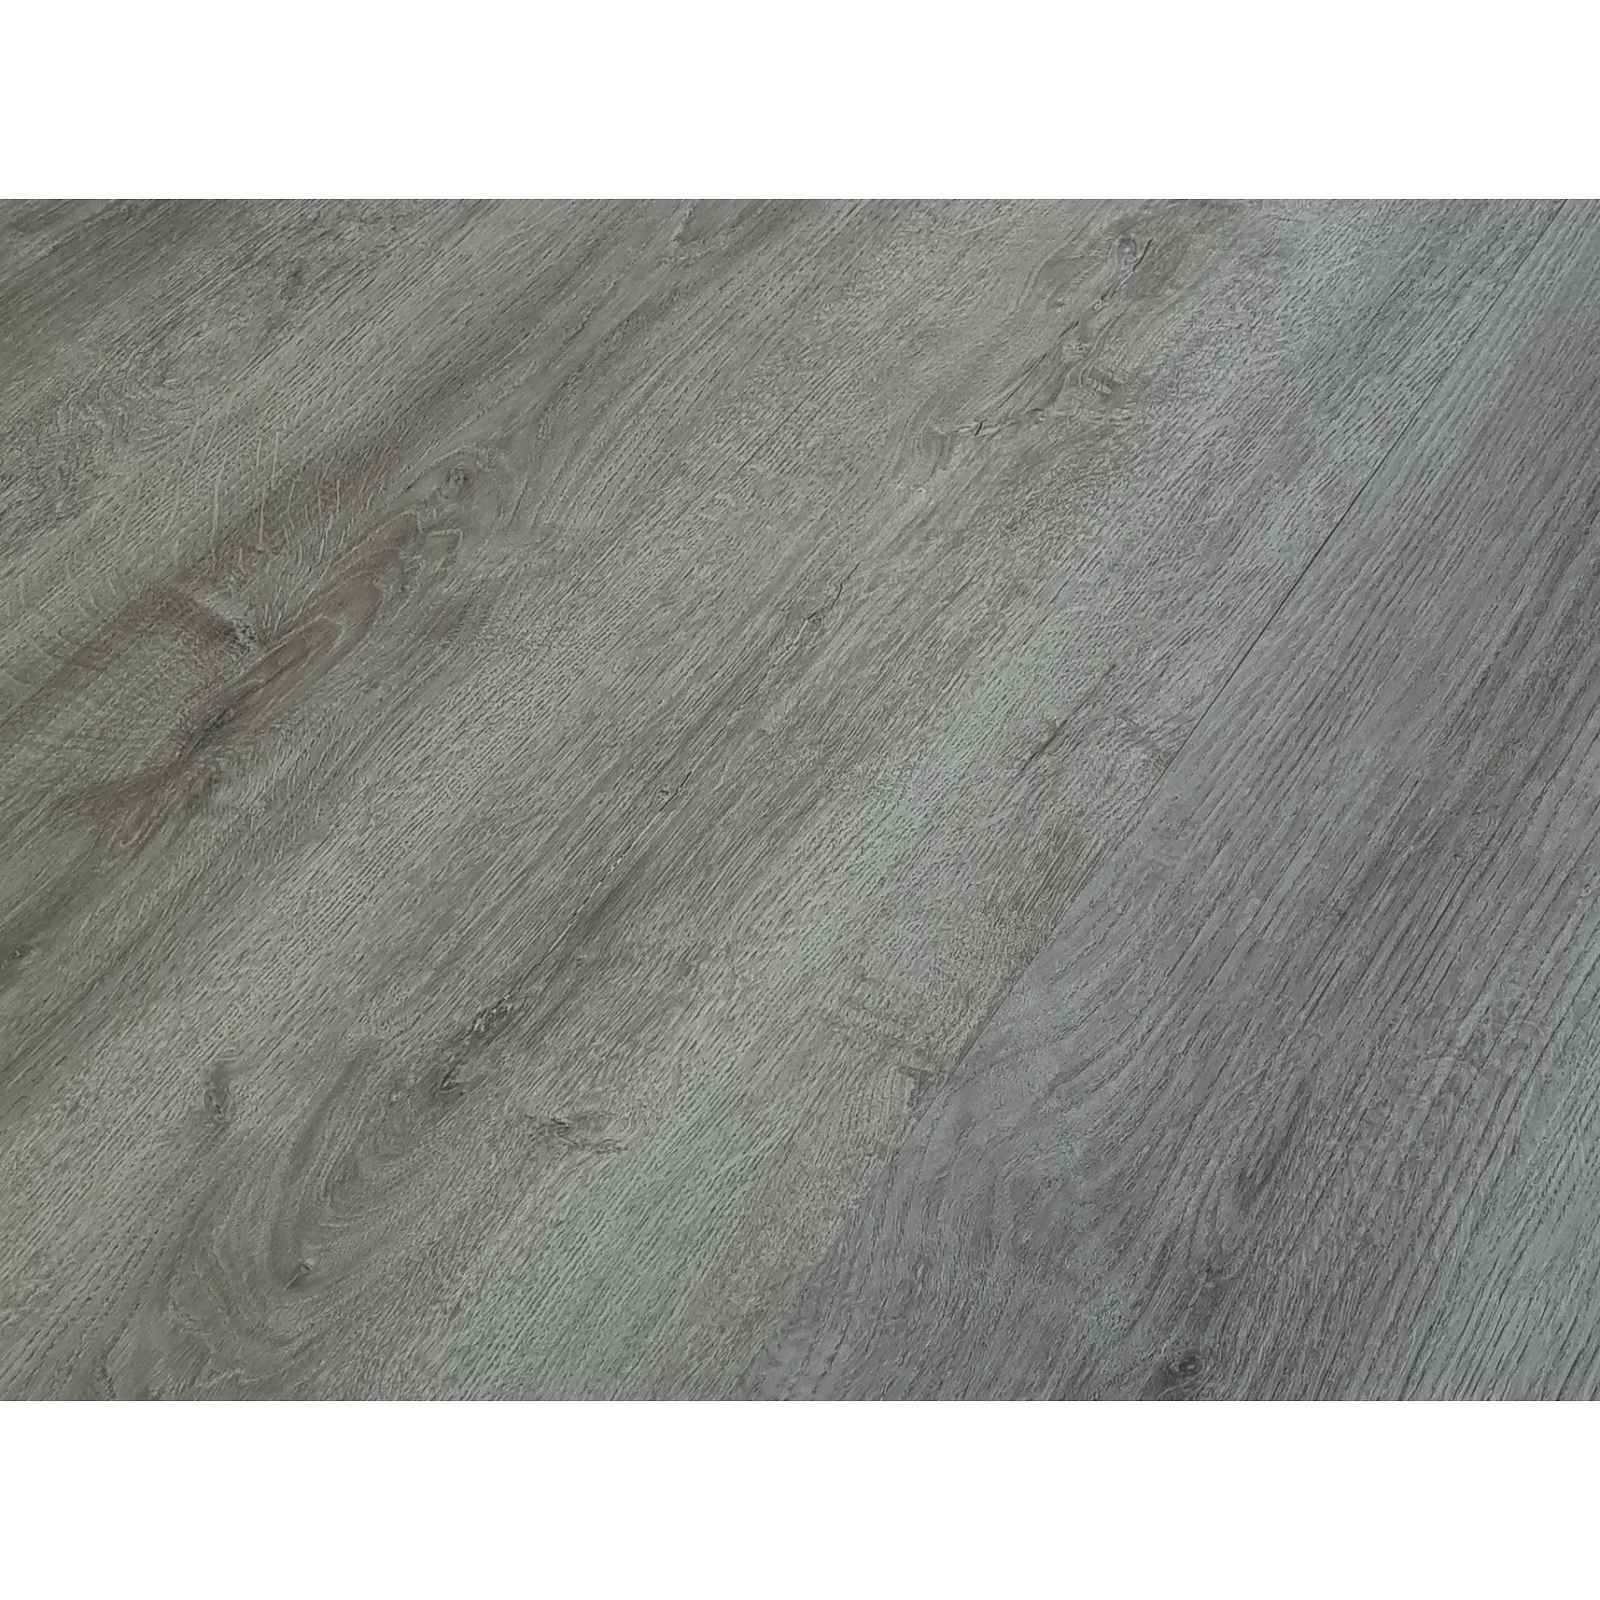 Podlaha vinylová zámková SPC Home gobi desert oak grey